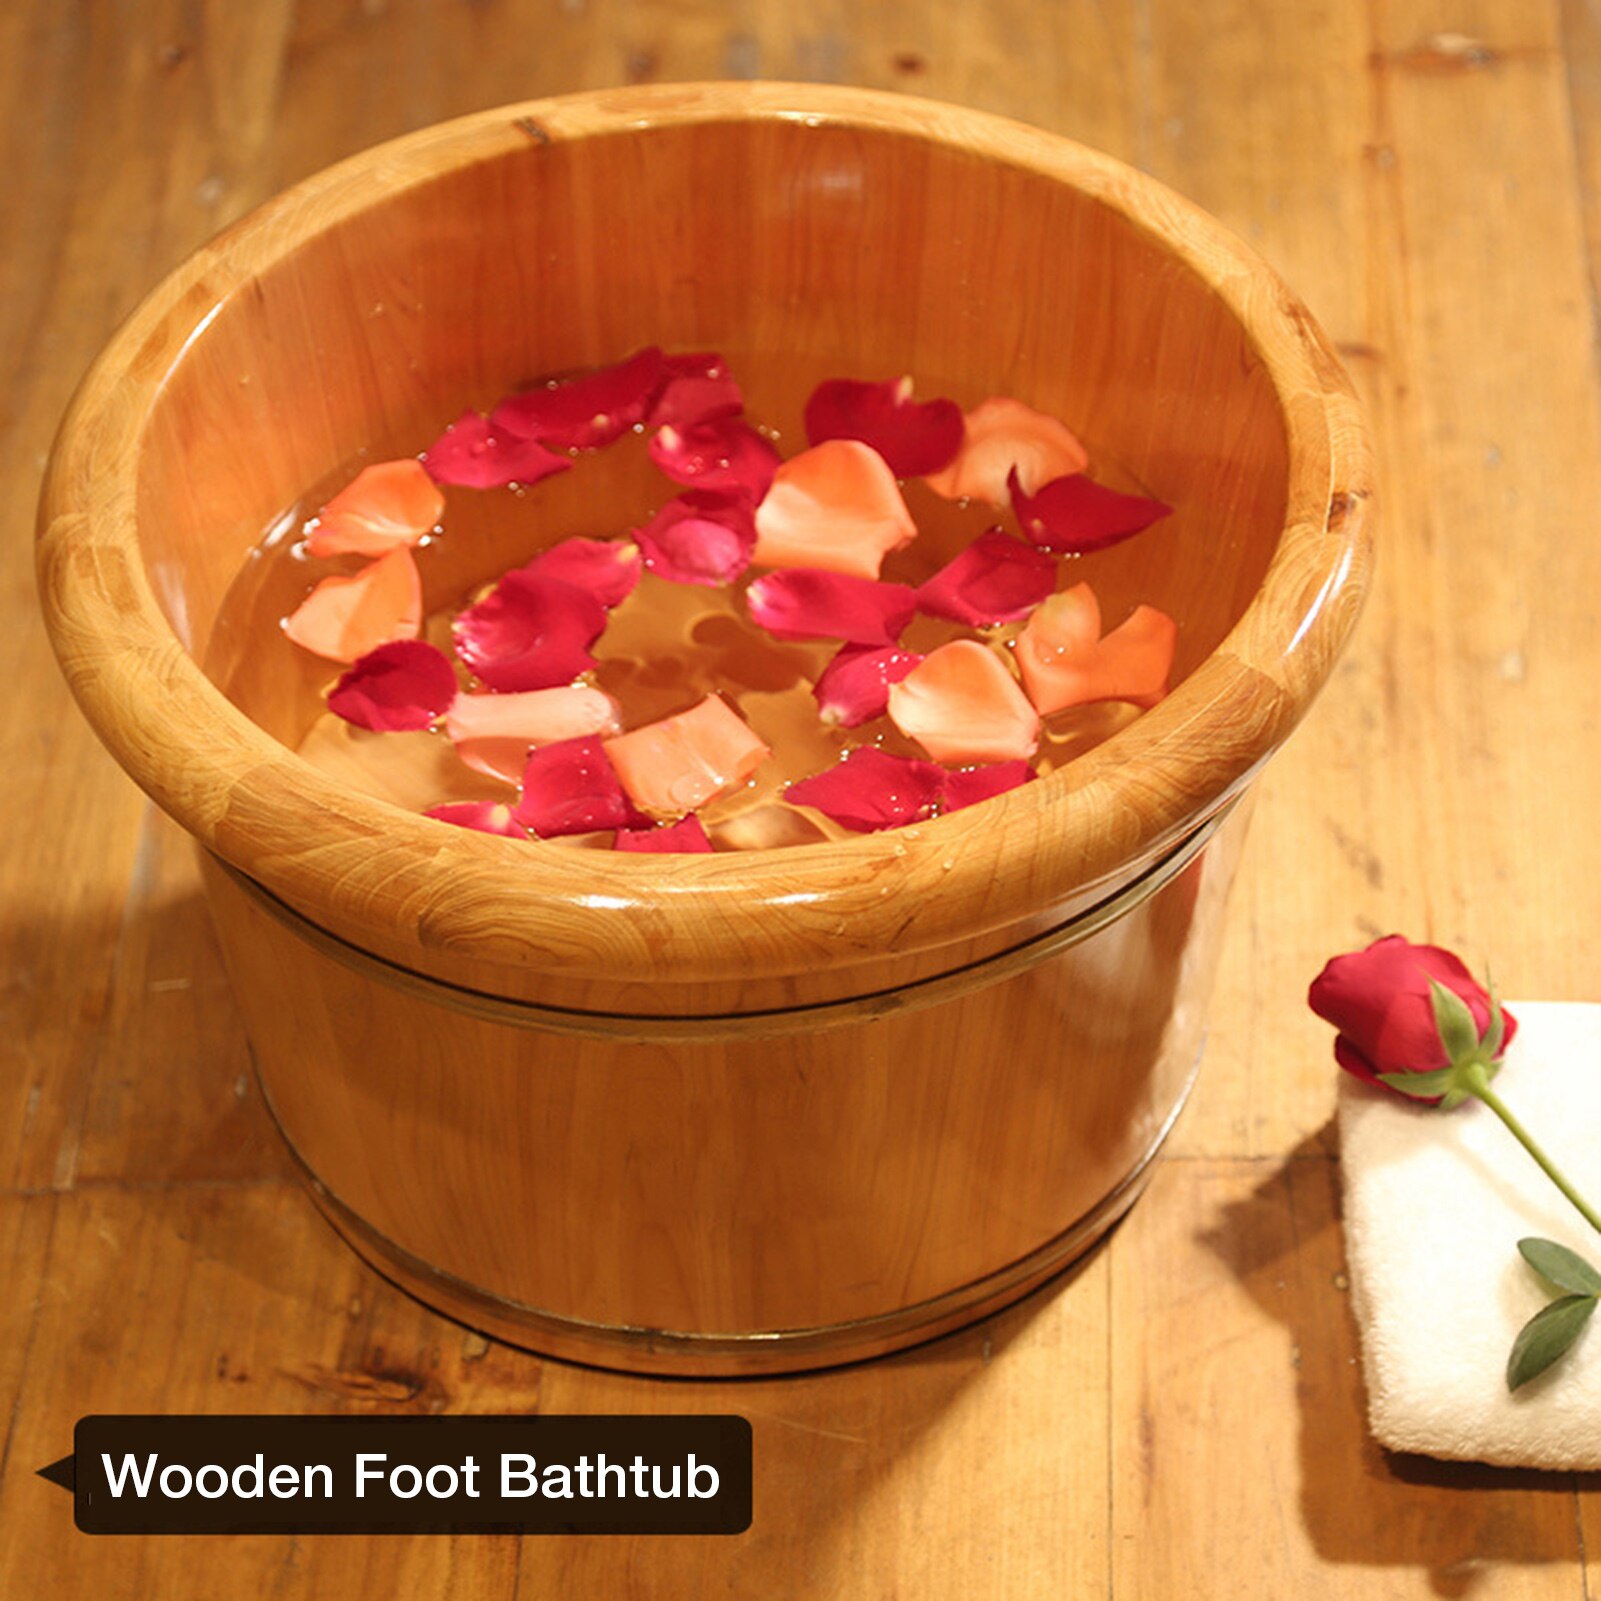 Foot Bathtub Wooden Bucket Foot Bath Barrel Foot Soaking Basin Spa Tub Solid Wood Basin Foot Wash Basin For Household